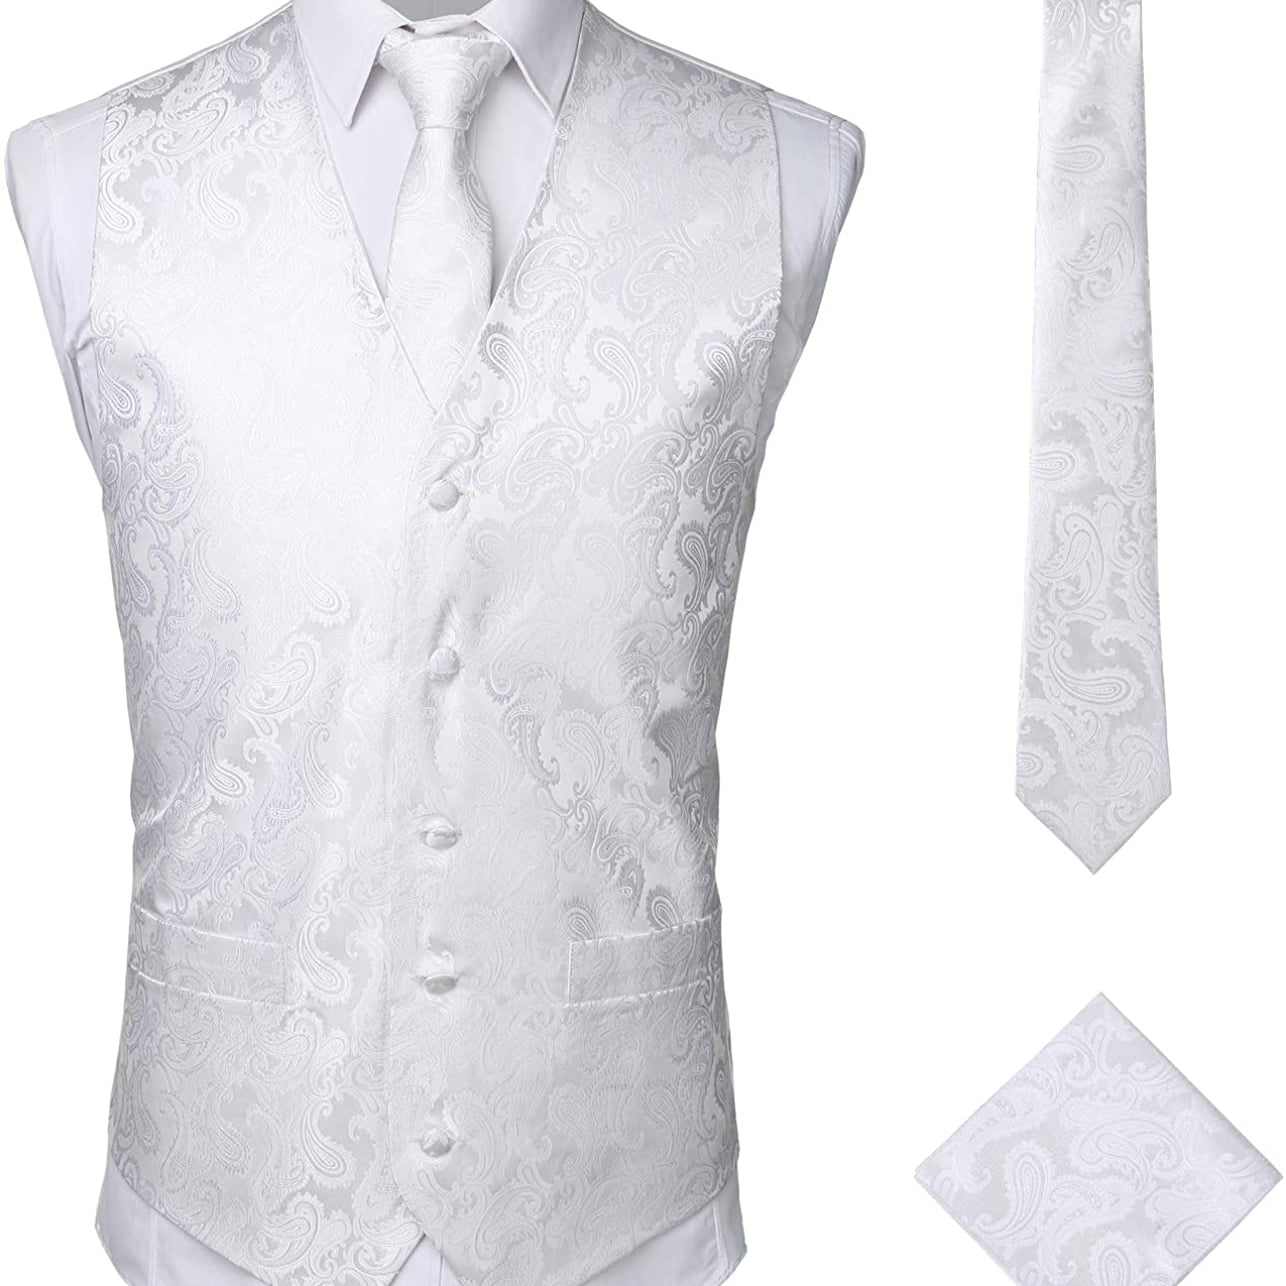 Men's Paisley Vest Necktie Pocket Square Handkerchief Set for Suit or Tuxedo